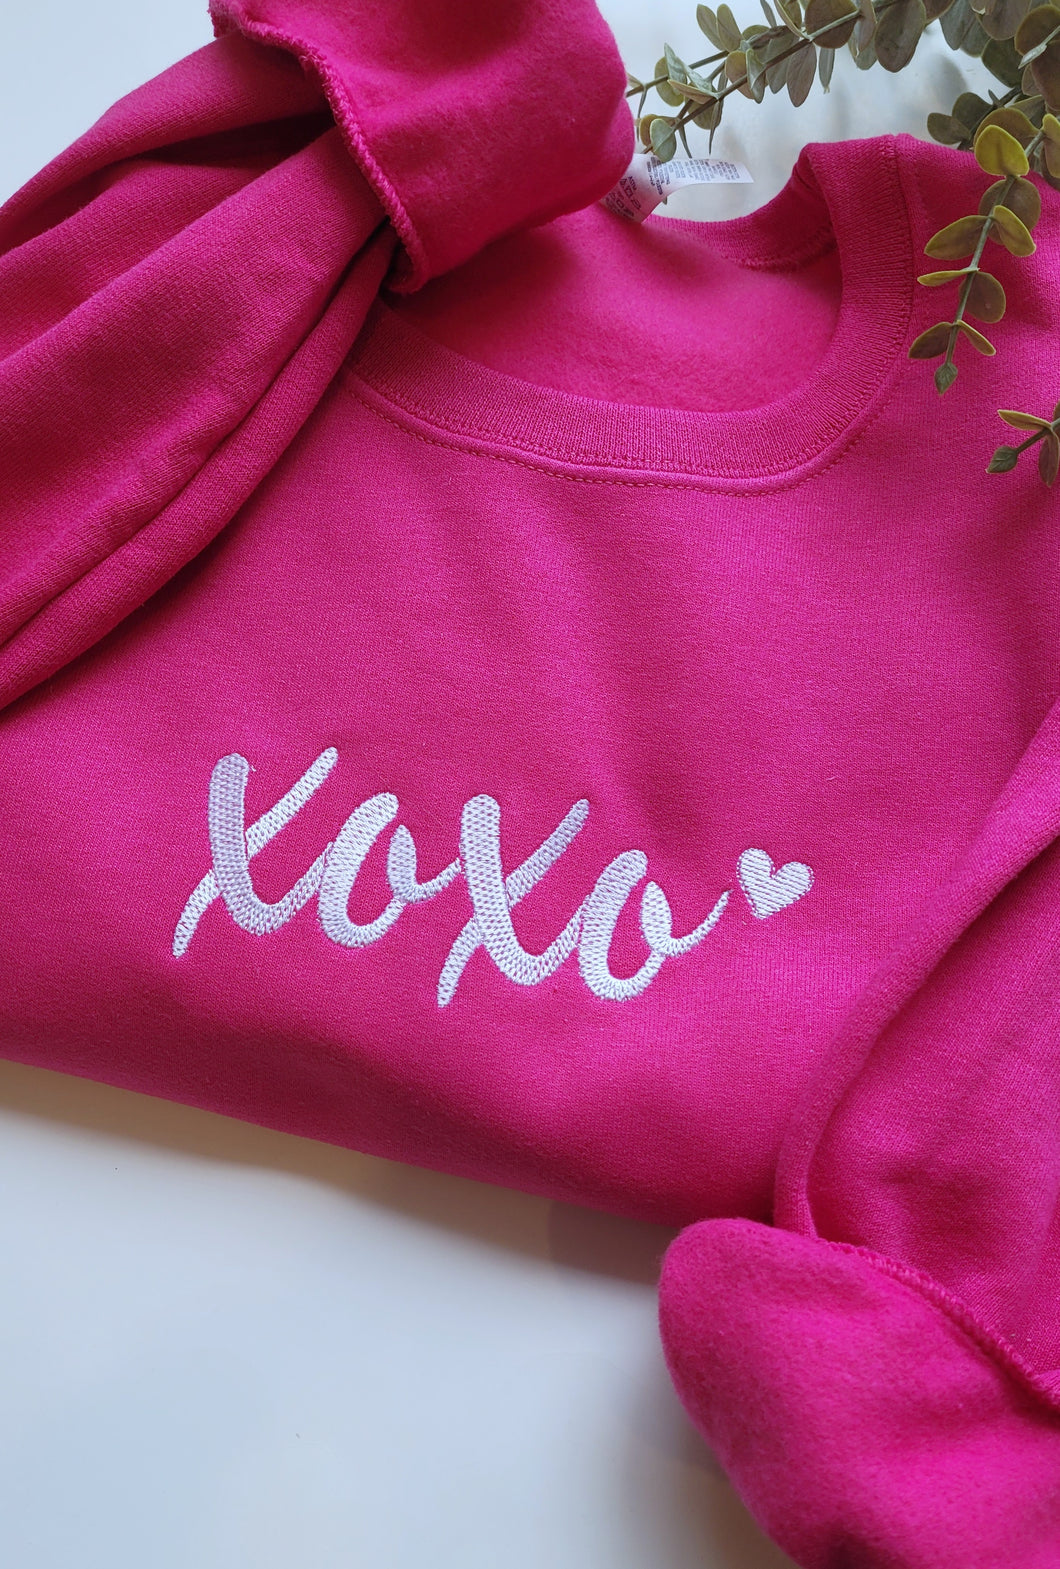 Xoxo Embroidered sweatshirt